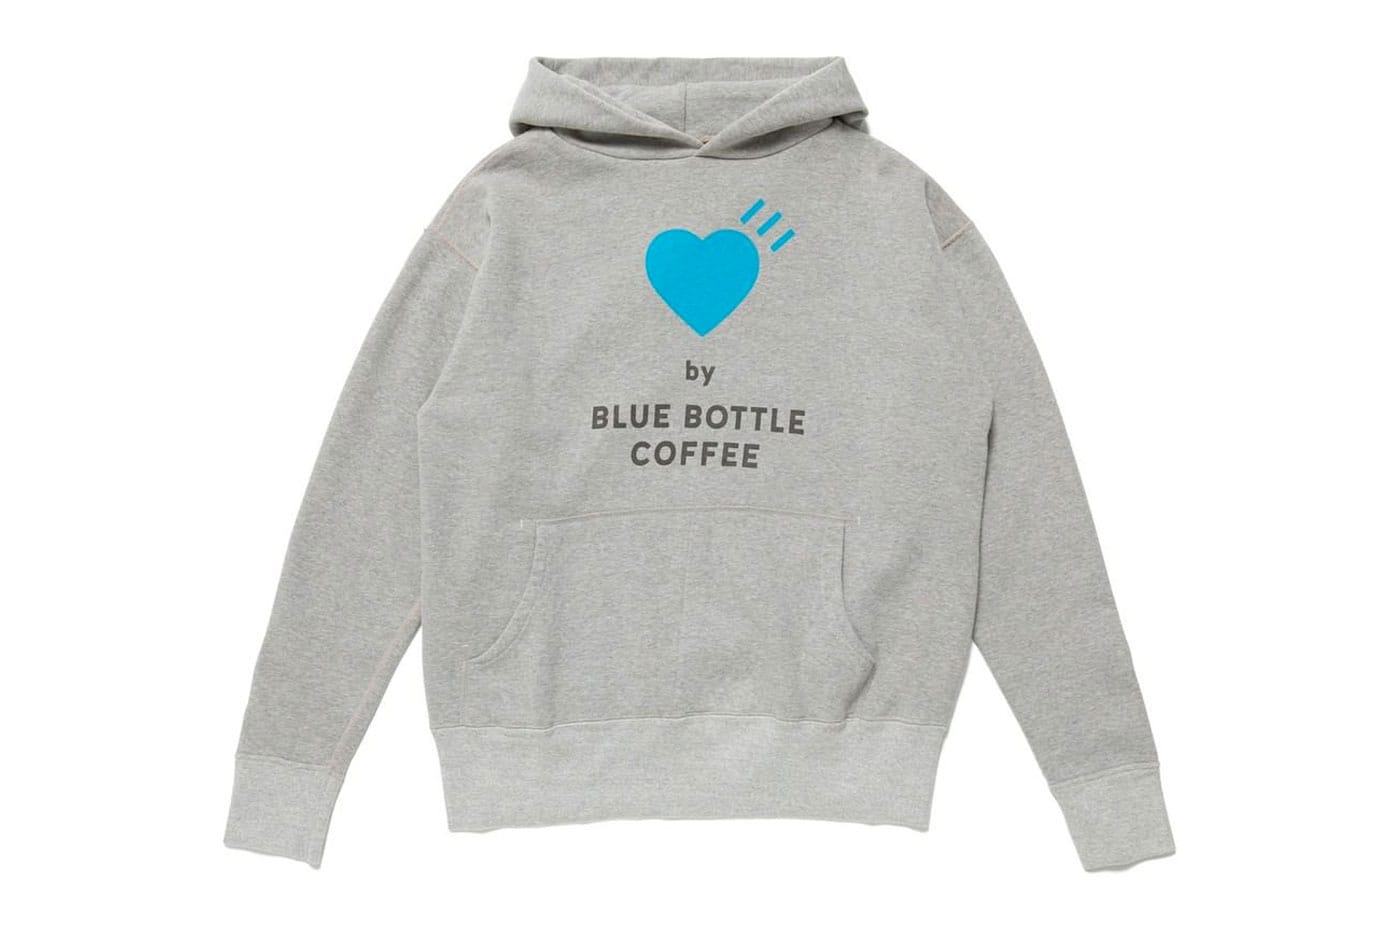 Blue Bottle Coffee x HUMAN MADE Drop 1 Release | HYPEBEAST